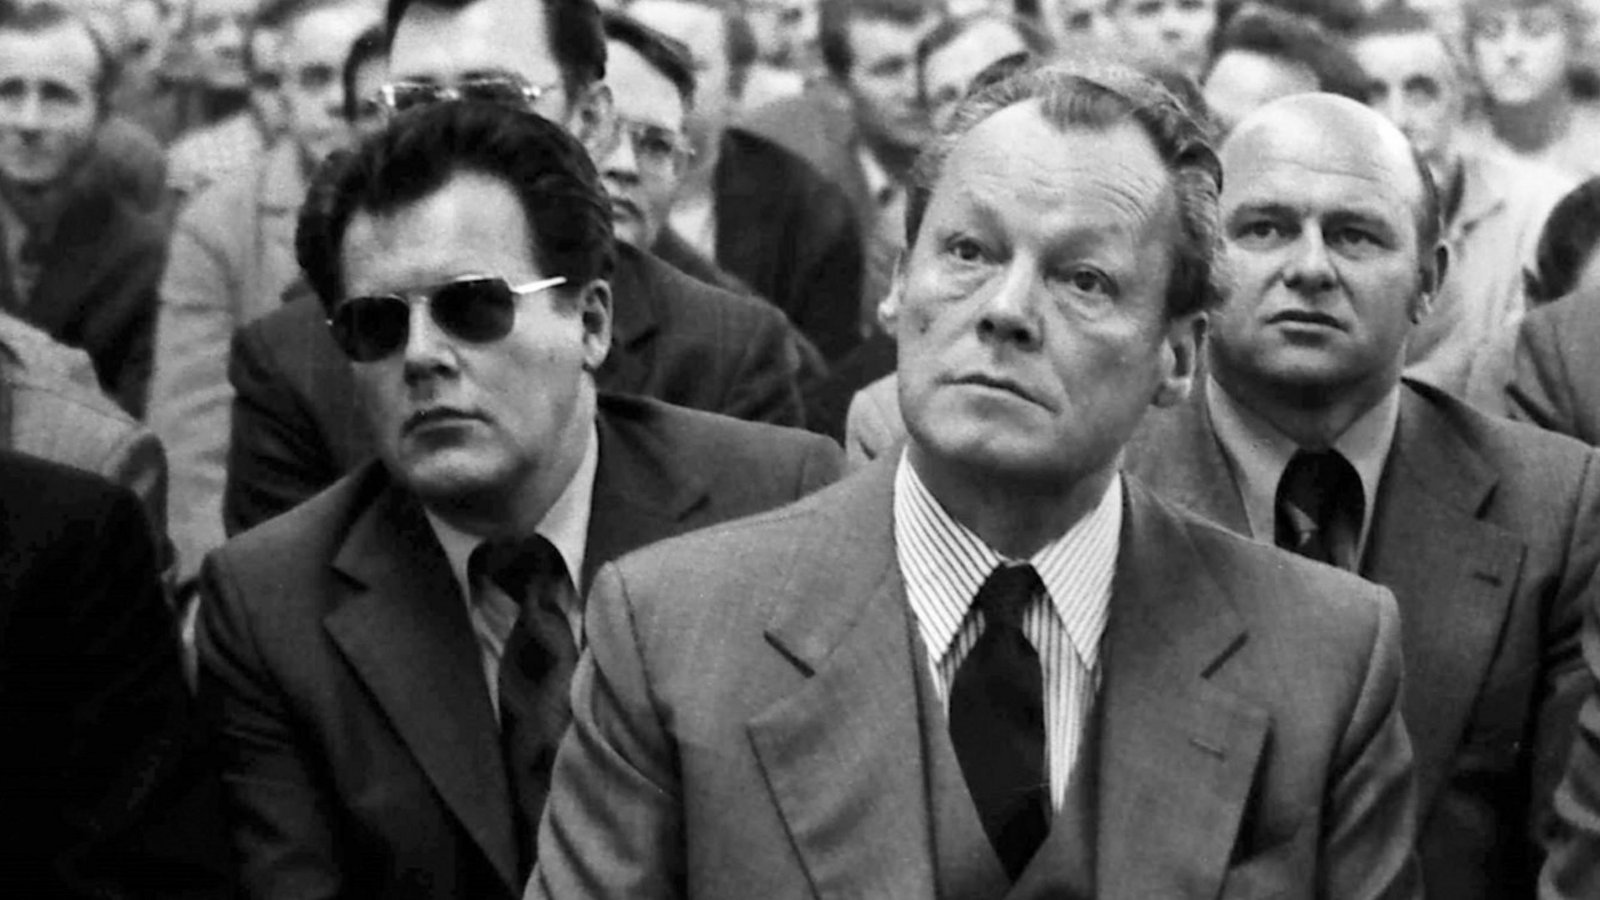 Bundeskanzler Willy Brandt vorn, links dahinter mit Sonnenbrille sein persönlicher Referent Günter GuillaumeFoto: ZDF/Imago